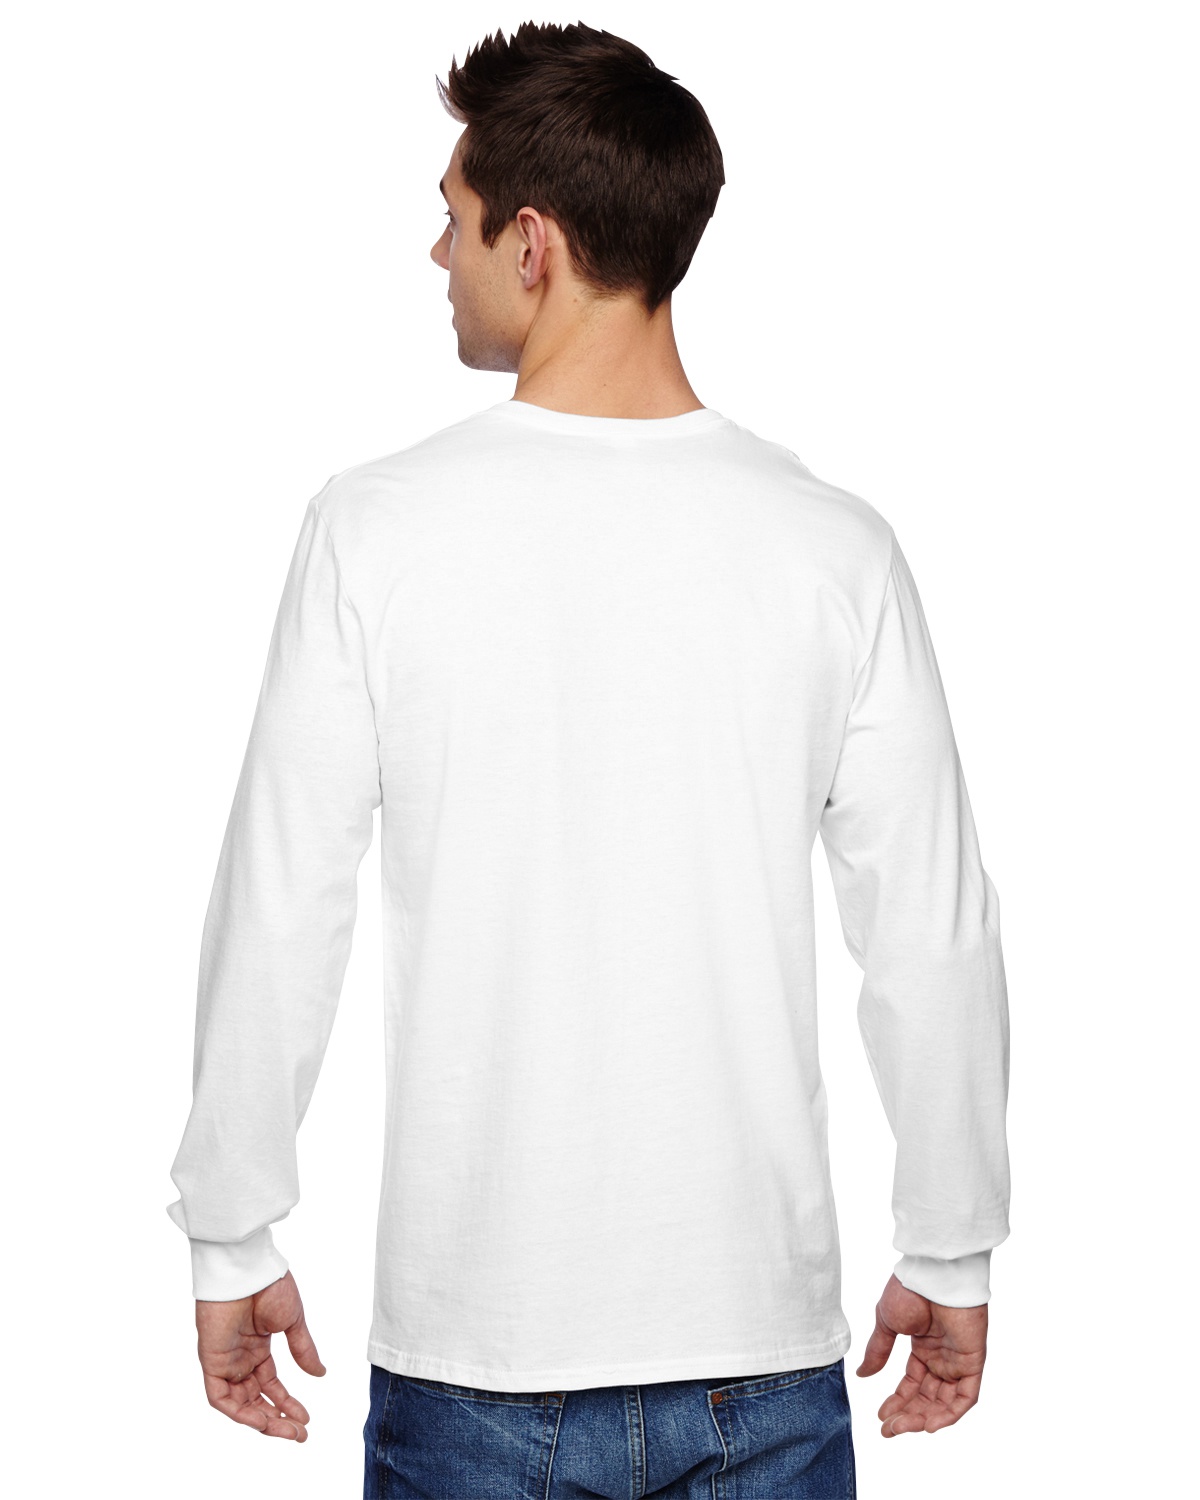 'Fruit Of The Loom SFLR Men's Sofspun Jersey Long Sleeve T-Shirt'